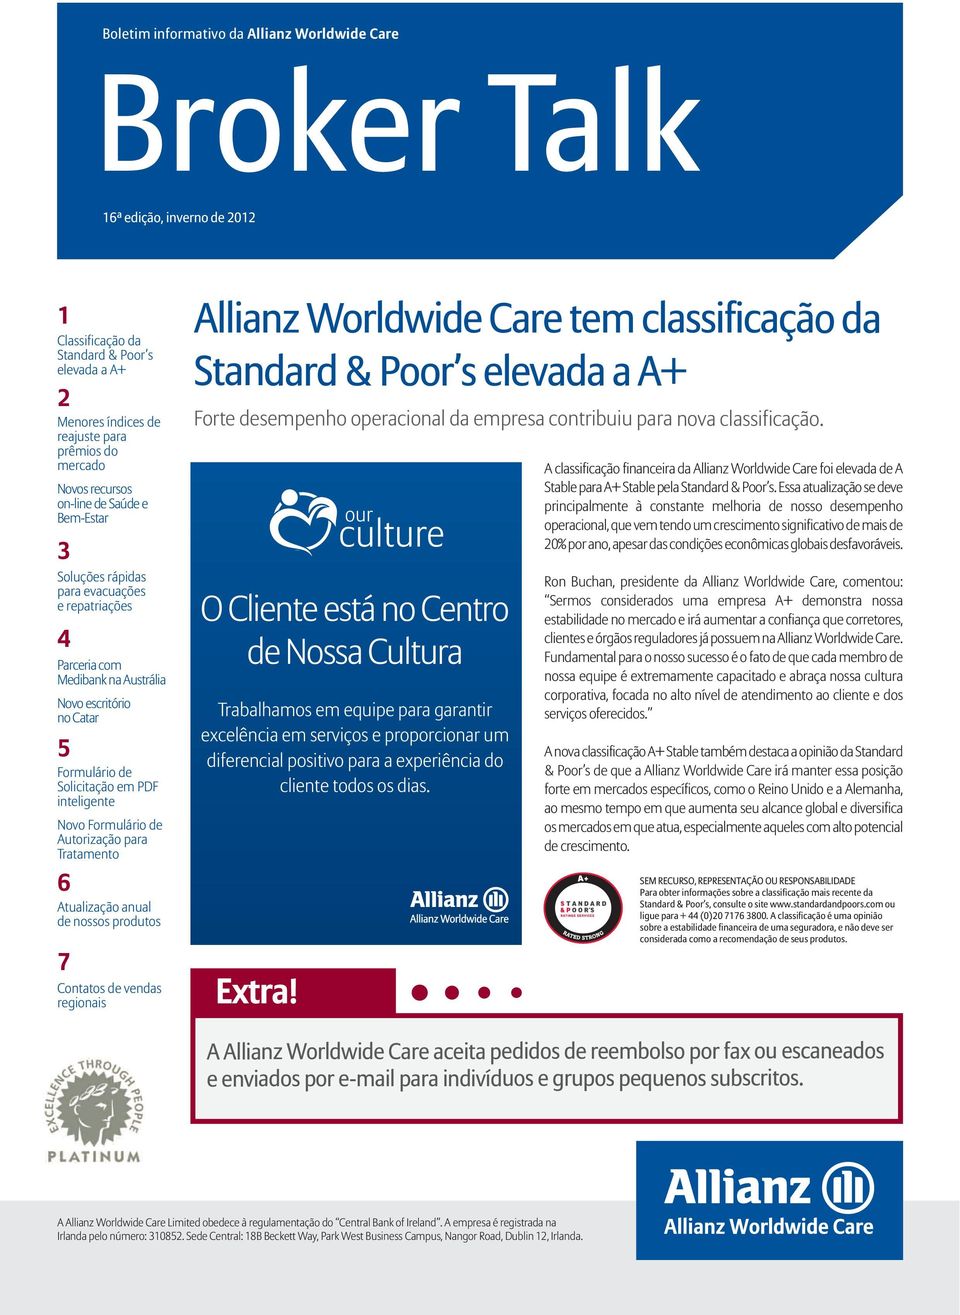 Novo Formulário de Autorização para Tratamento Allianz Worldwide Care tem classificação da Standard & Poor s elevada a A+ Forte desempenho operacional da empresa contribuiu para nova classificação.